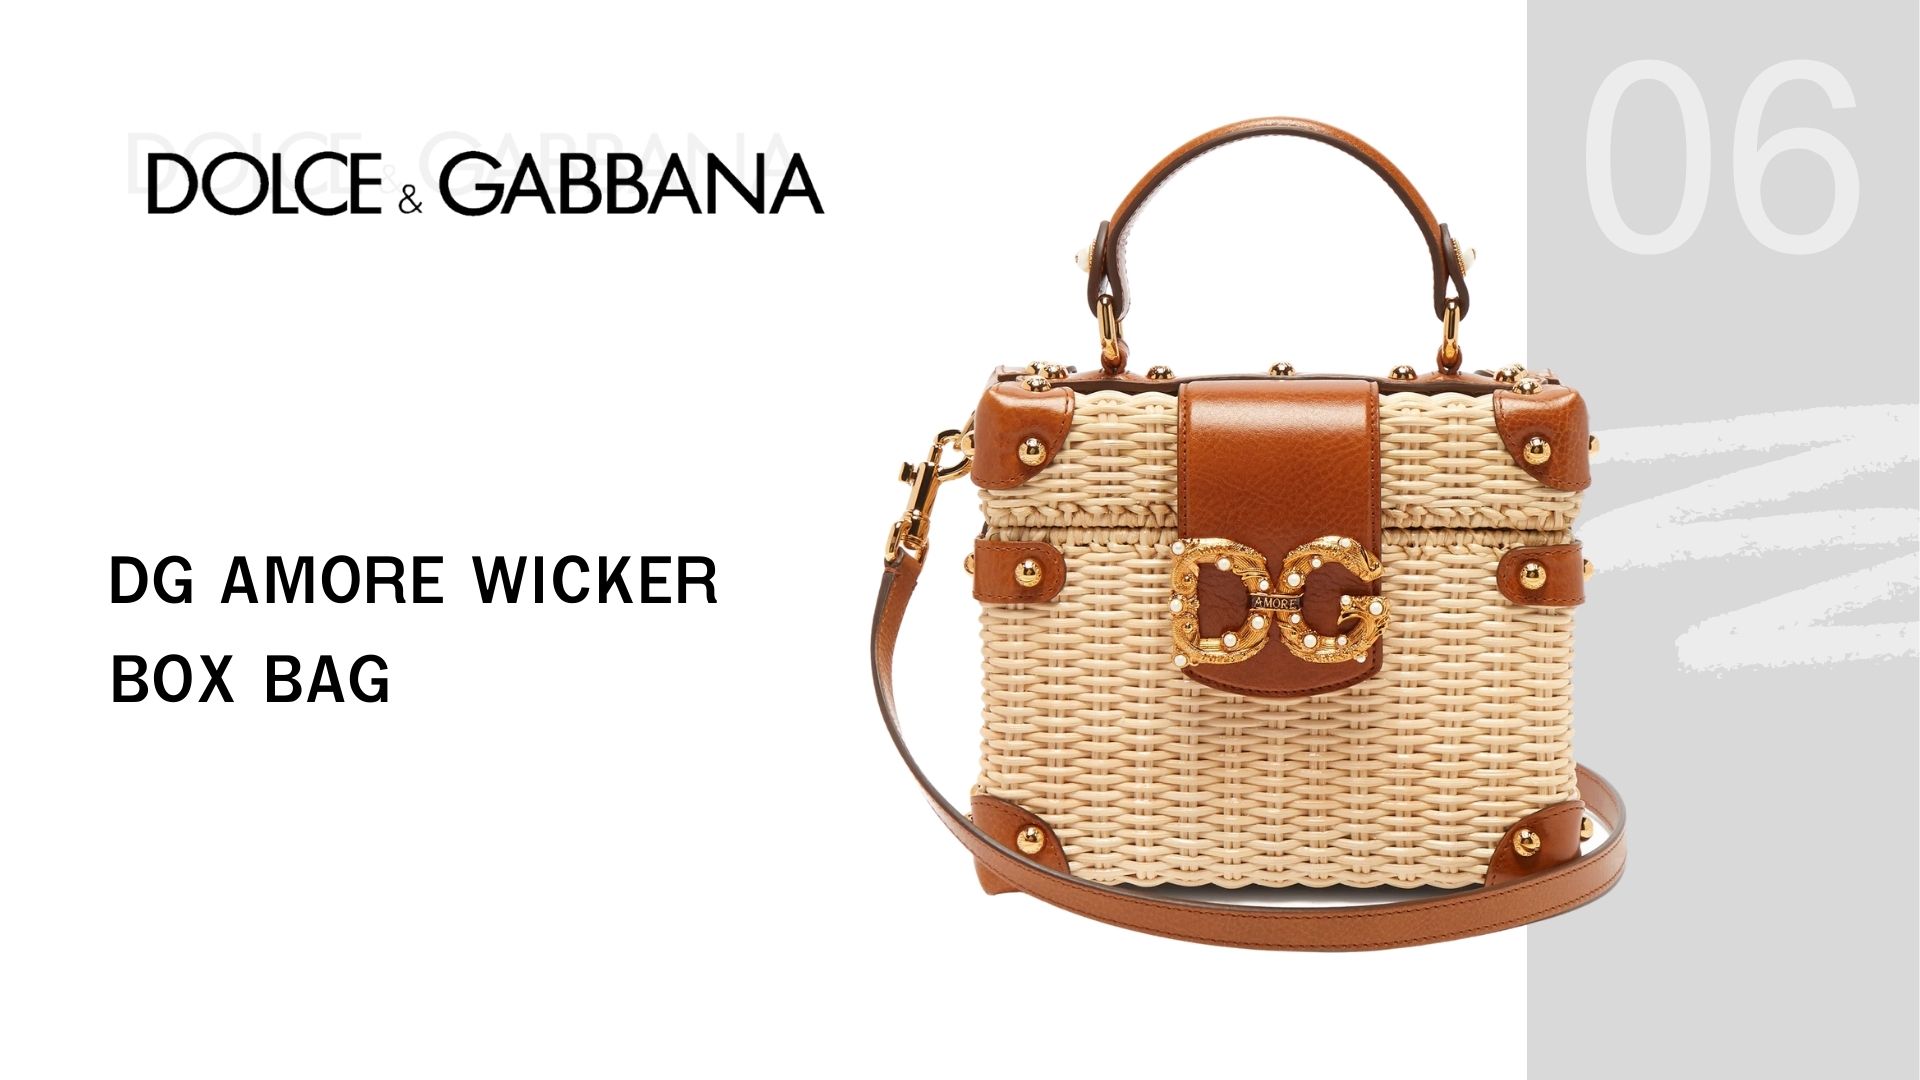 เอาใจคนอินเลิฟกระเป๋าสานด้วย .... Luxury Brand สุดฮอต DG Amore Wicker Box Bag